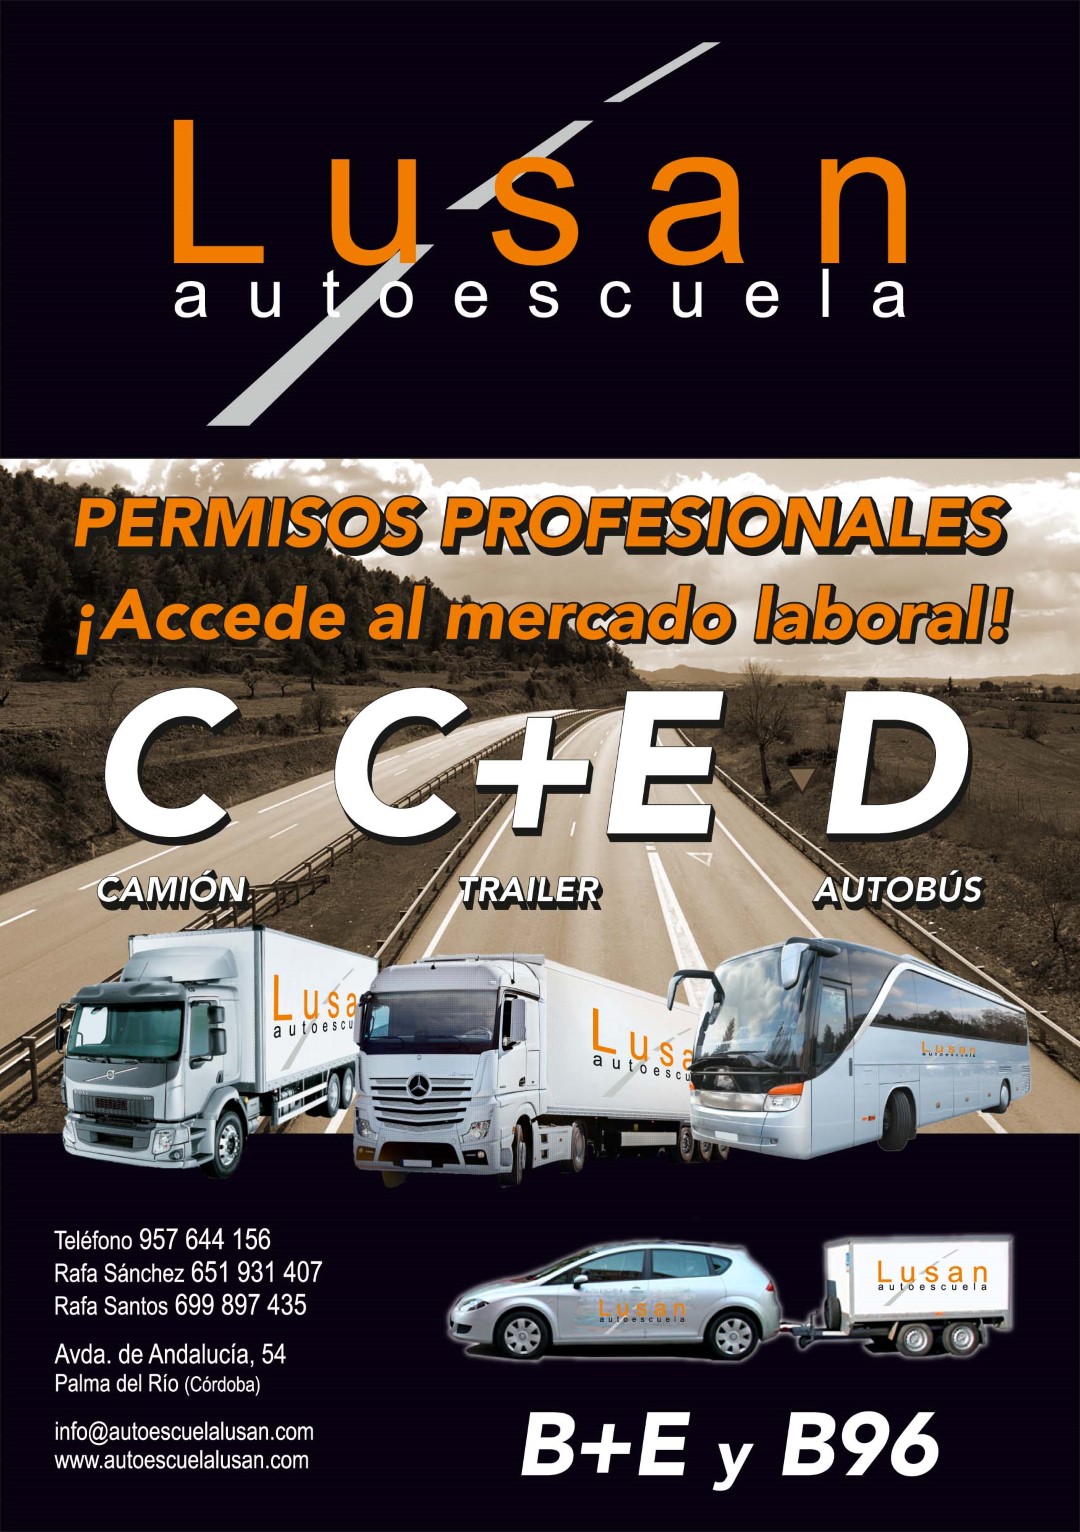 Autoescuela Lusan A5 permisos profesionales.cdr